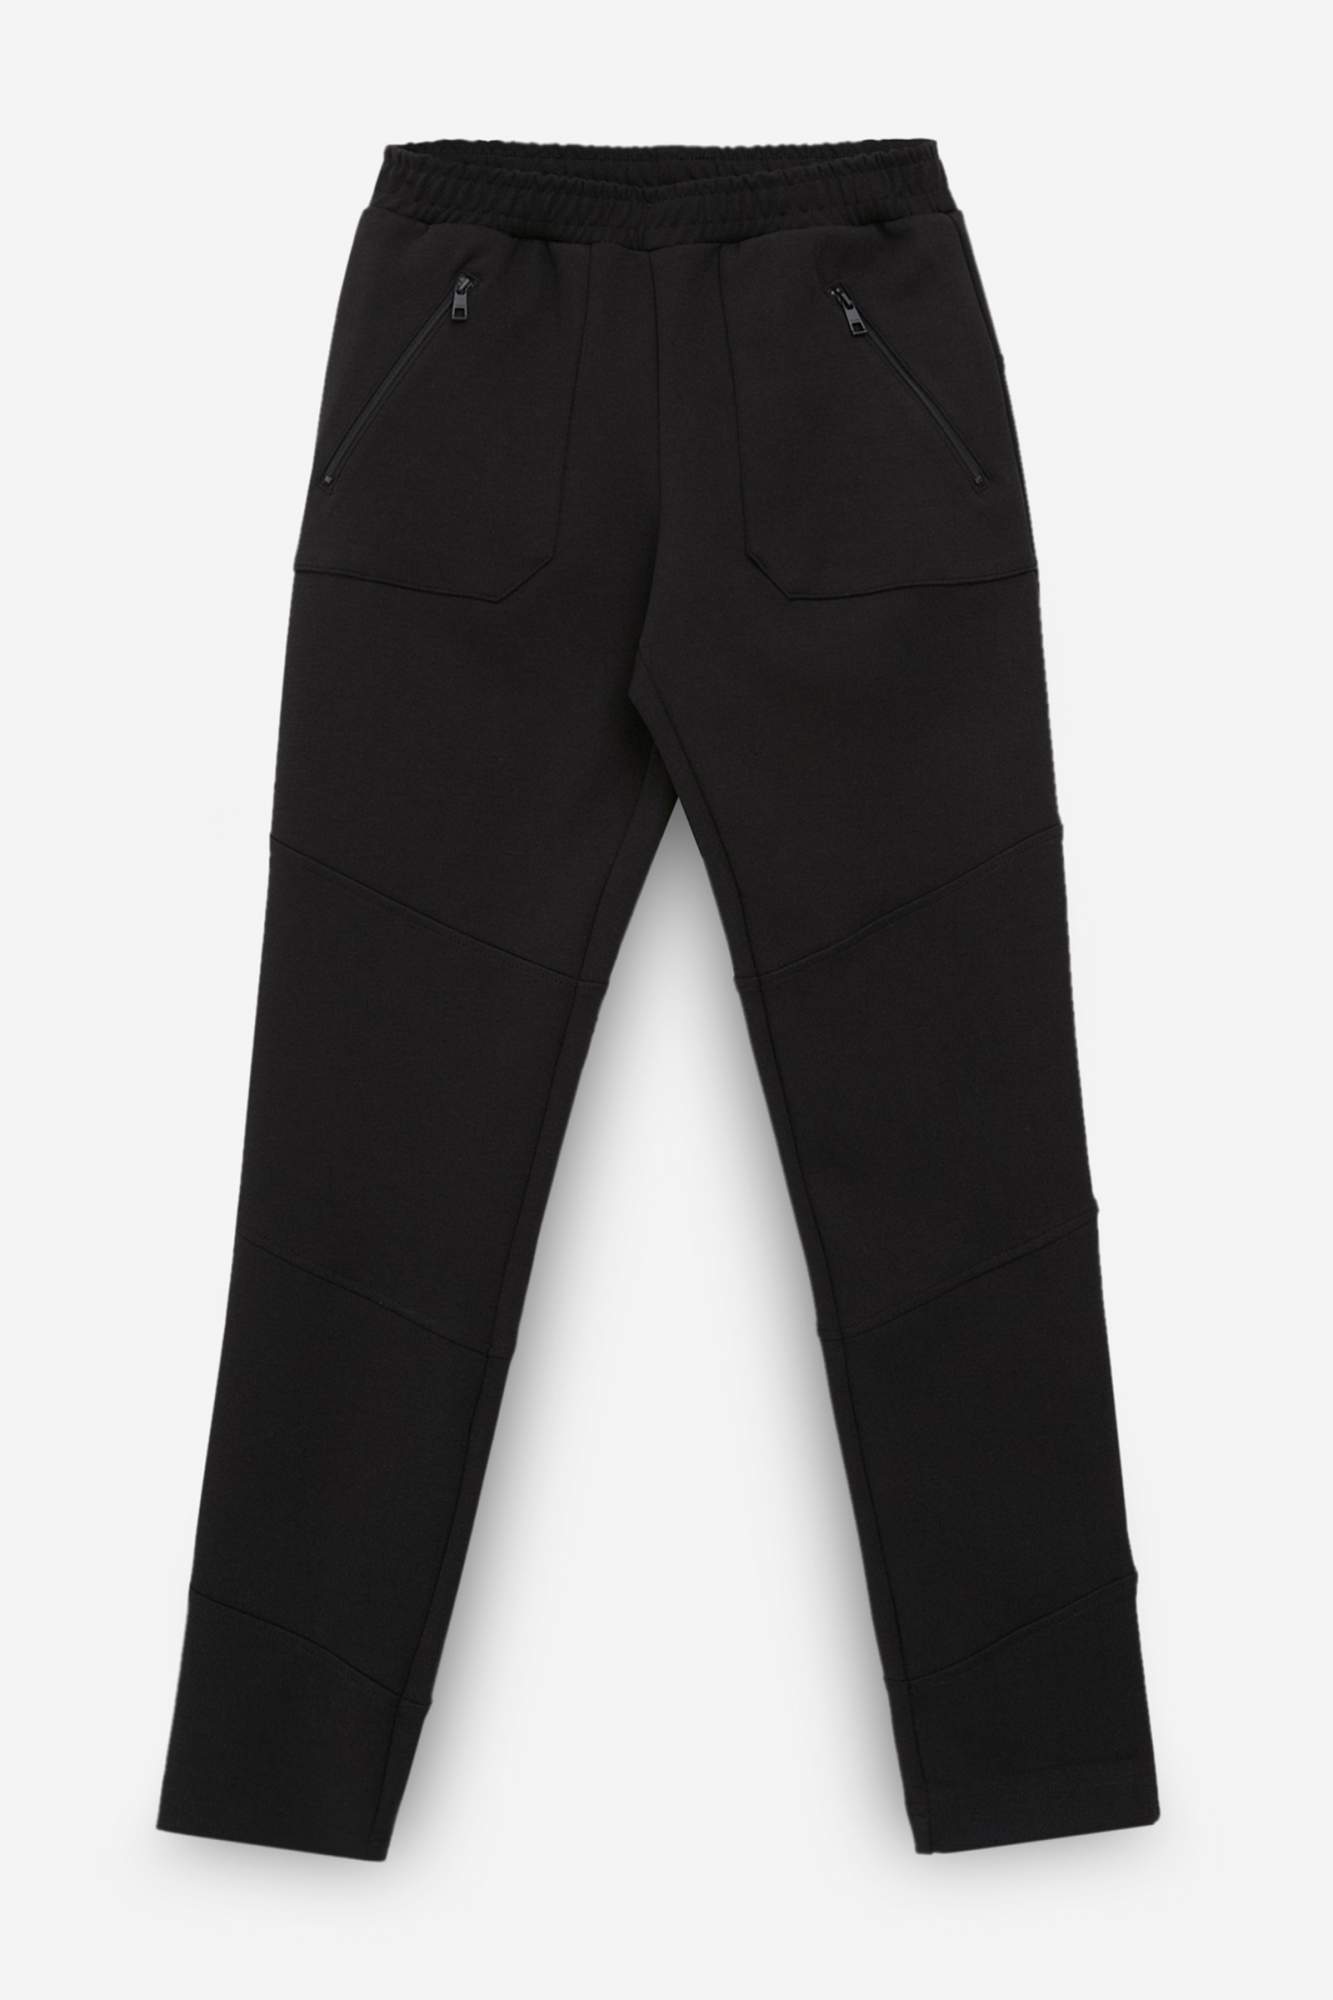 Спортивные брюки женские Finn Flare FBC13075 черные M